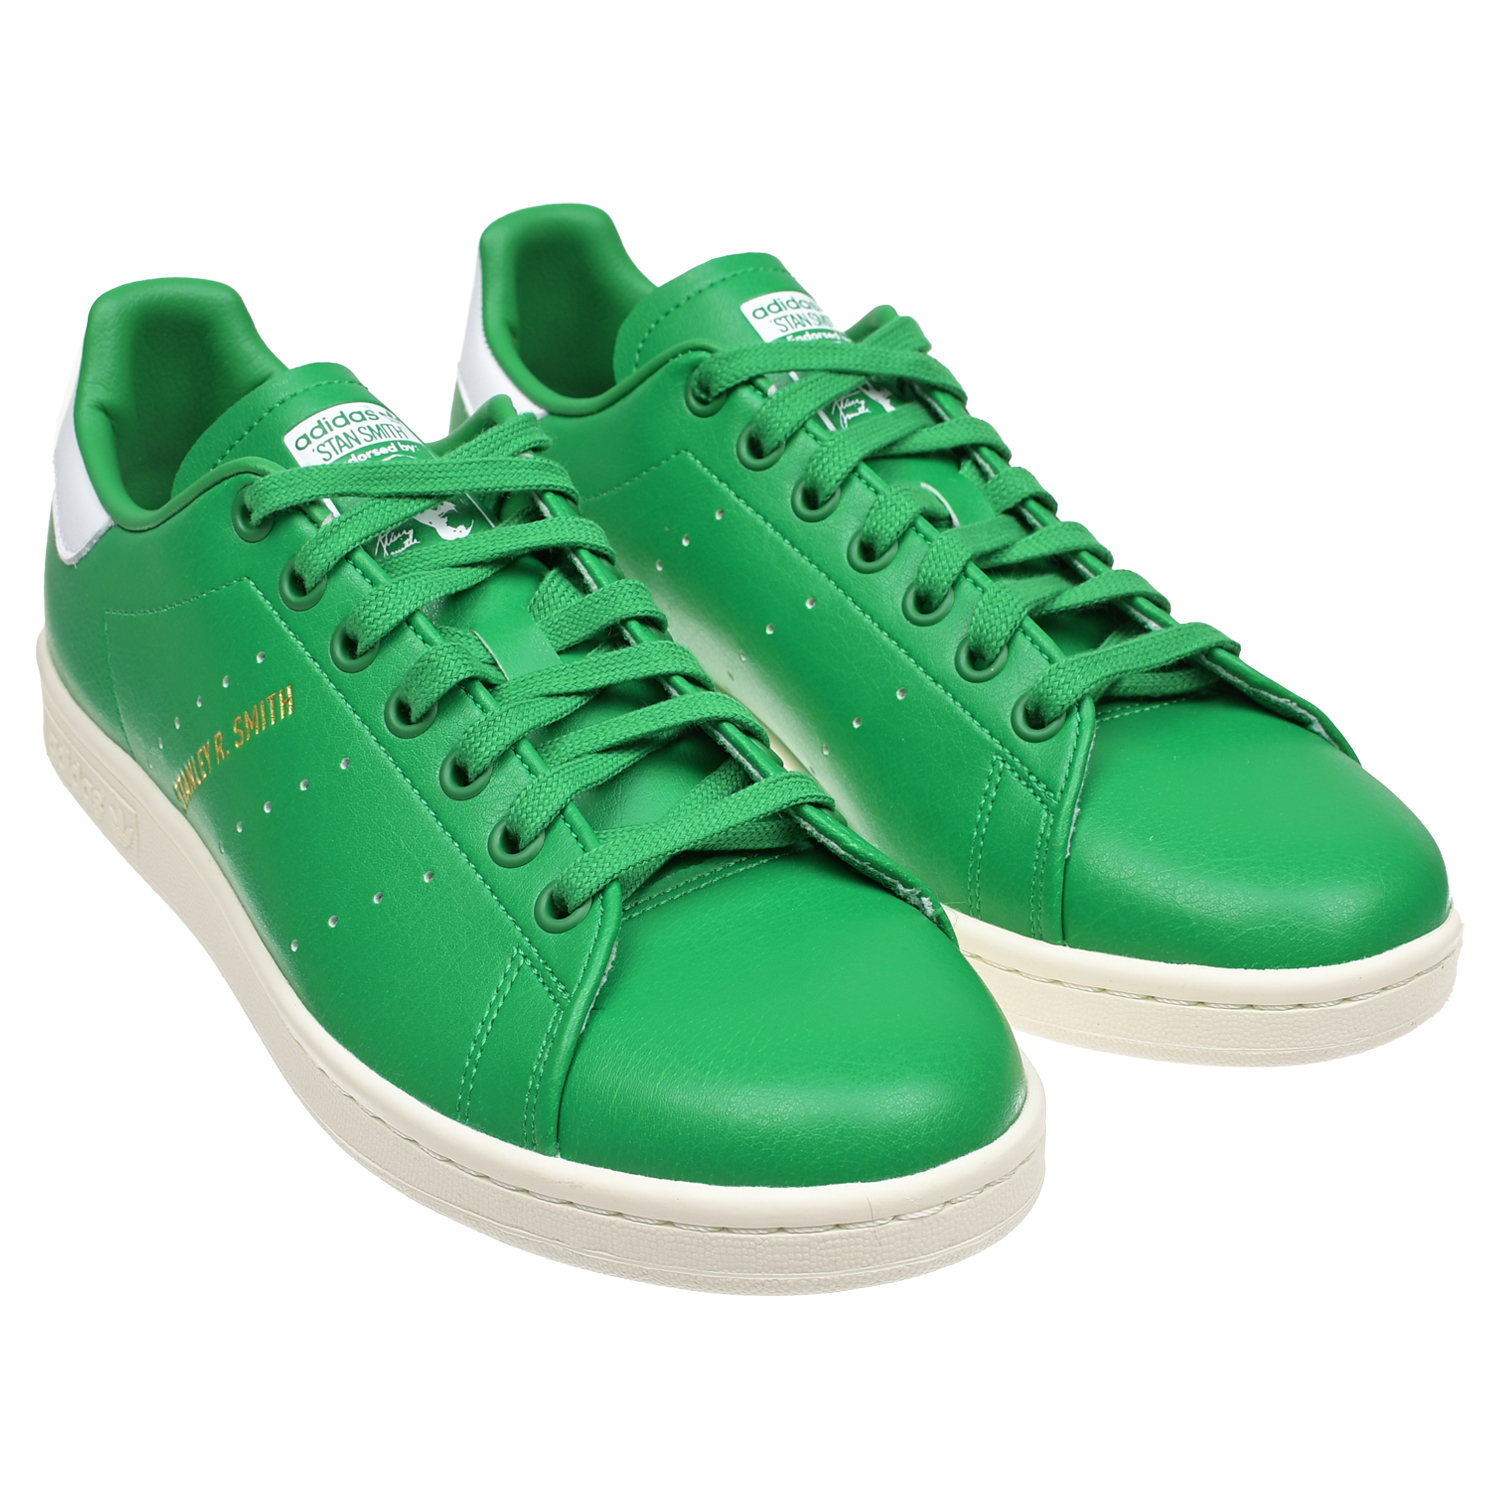 Сине зеленые кроссовки. Adidas Stan Smith зеленые. Adidas кеды зеленые 2022. Кроссовки Stan Smith adidas зеленая коробка зеленая. Кроссовки Stan Smith adidas зеленая коробка.